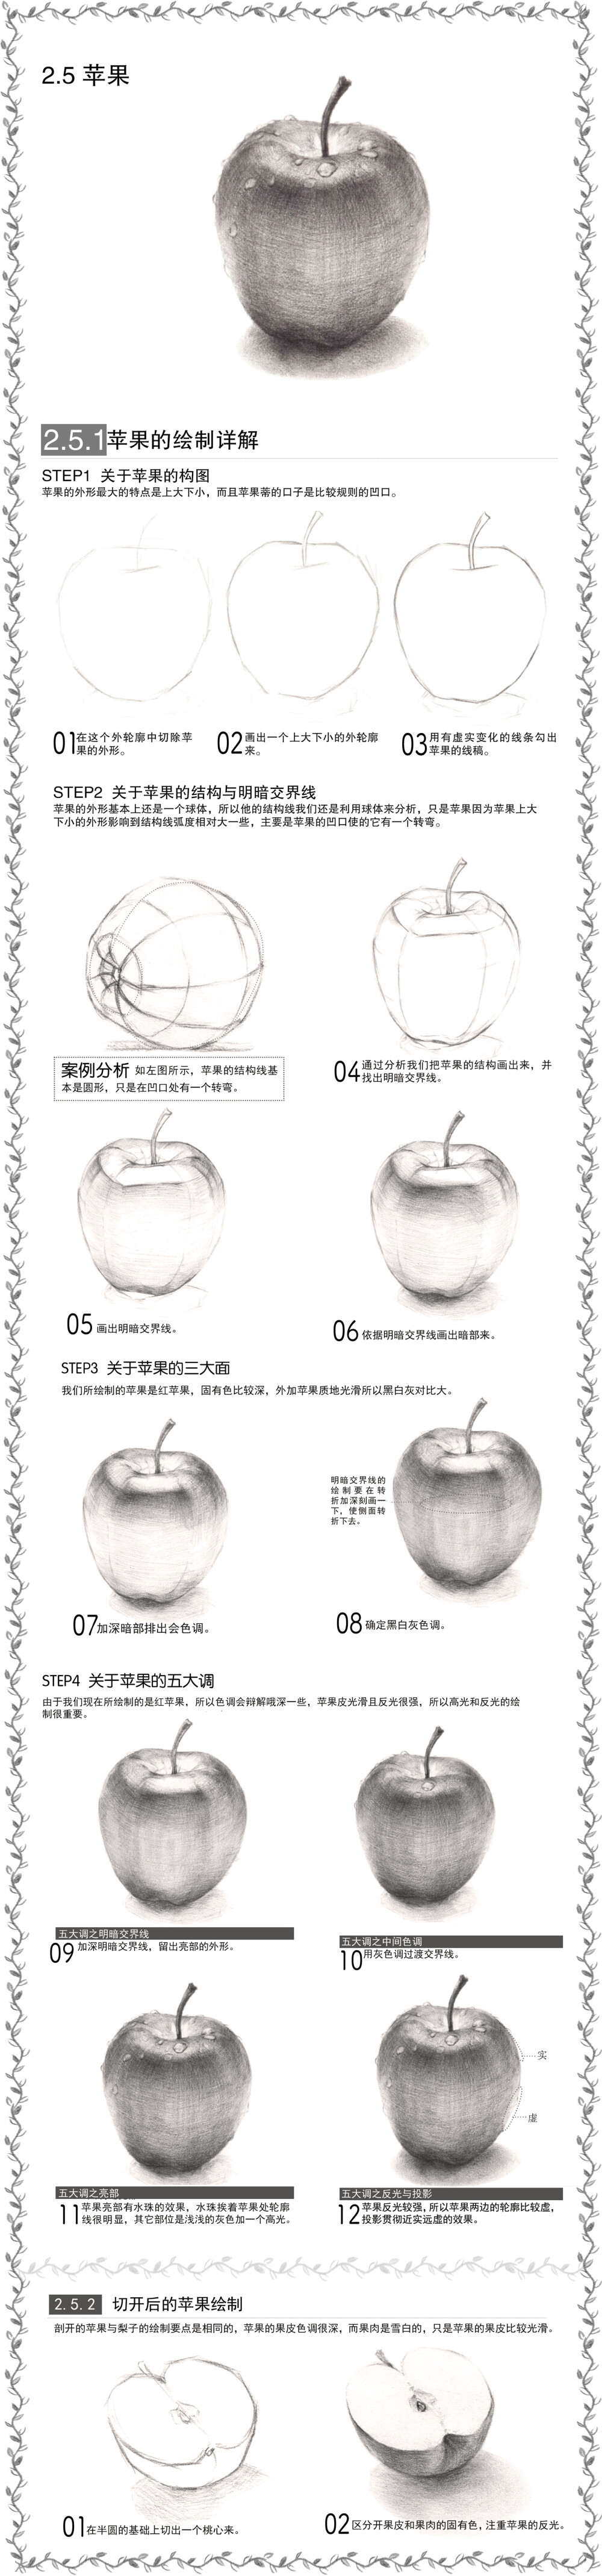 本案例摘自爱林文化主编、人民邮电出版社出版的《铅笔素描静物绘制详解》——苹果